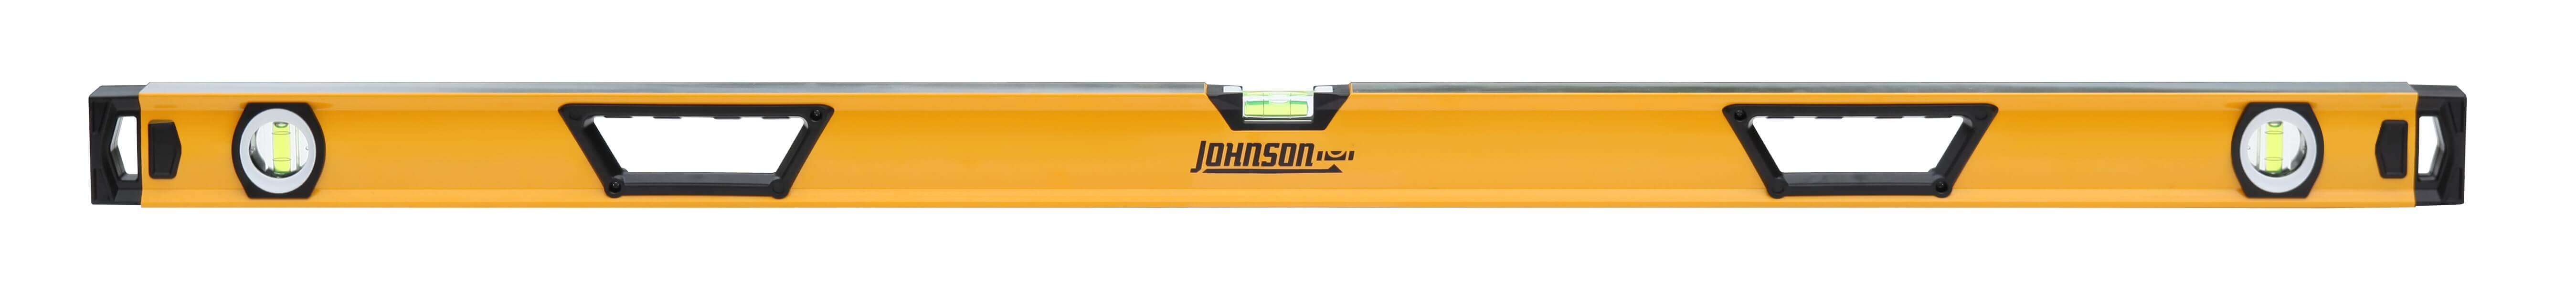 Johnson Level 48 Professional Aluminum Box Level 1741-4800